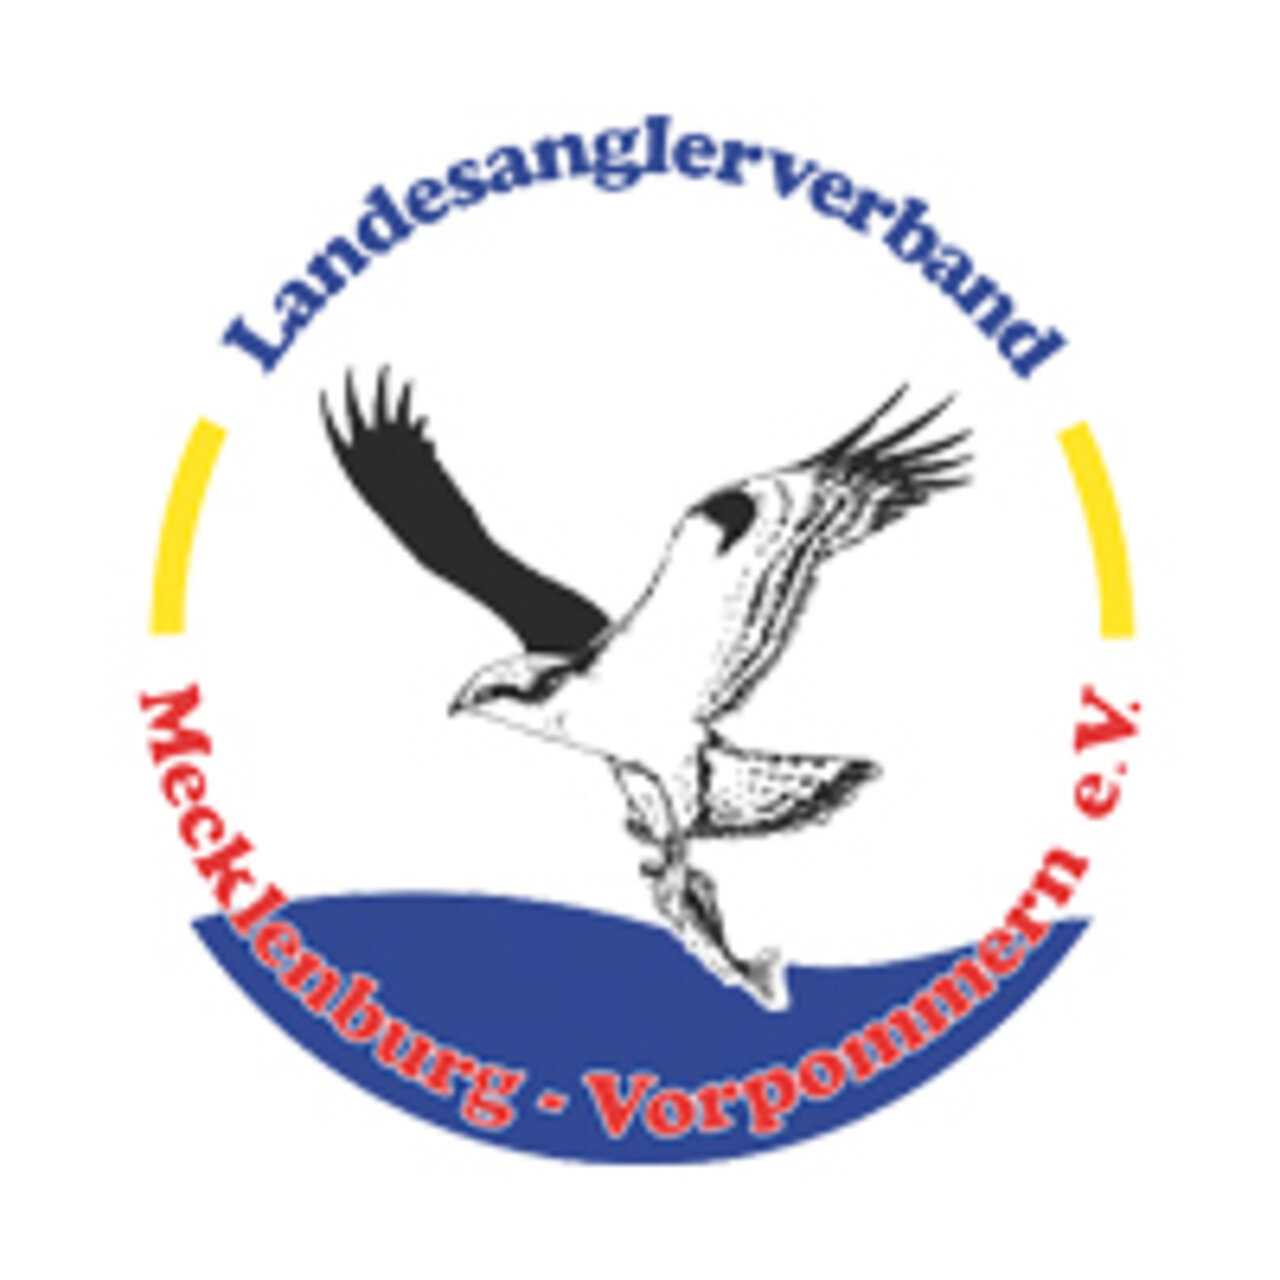 Verbandslogo Landesanglerverband Mecklenburg-Vorpommern e.V.